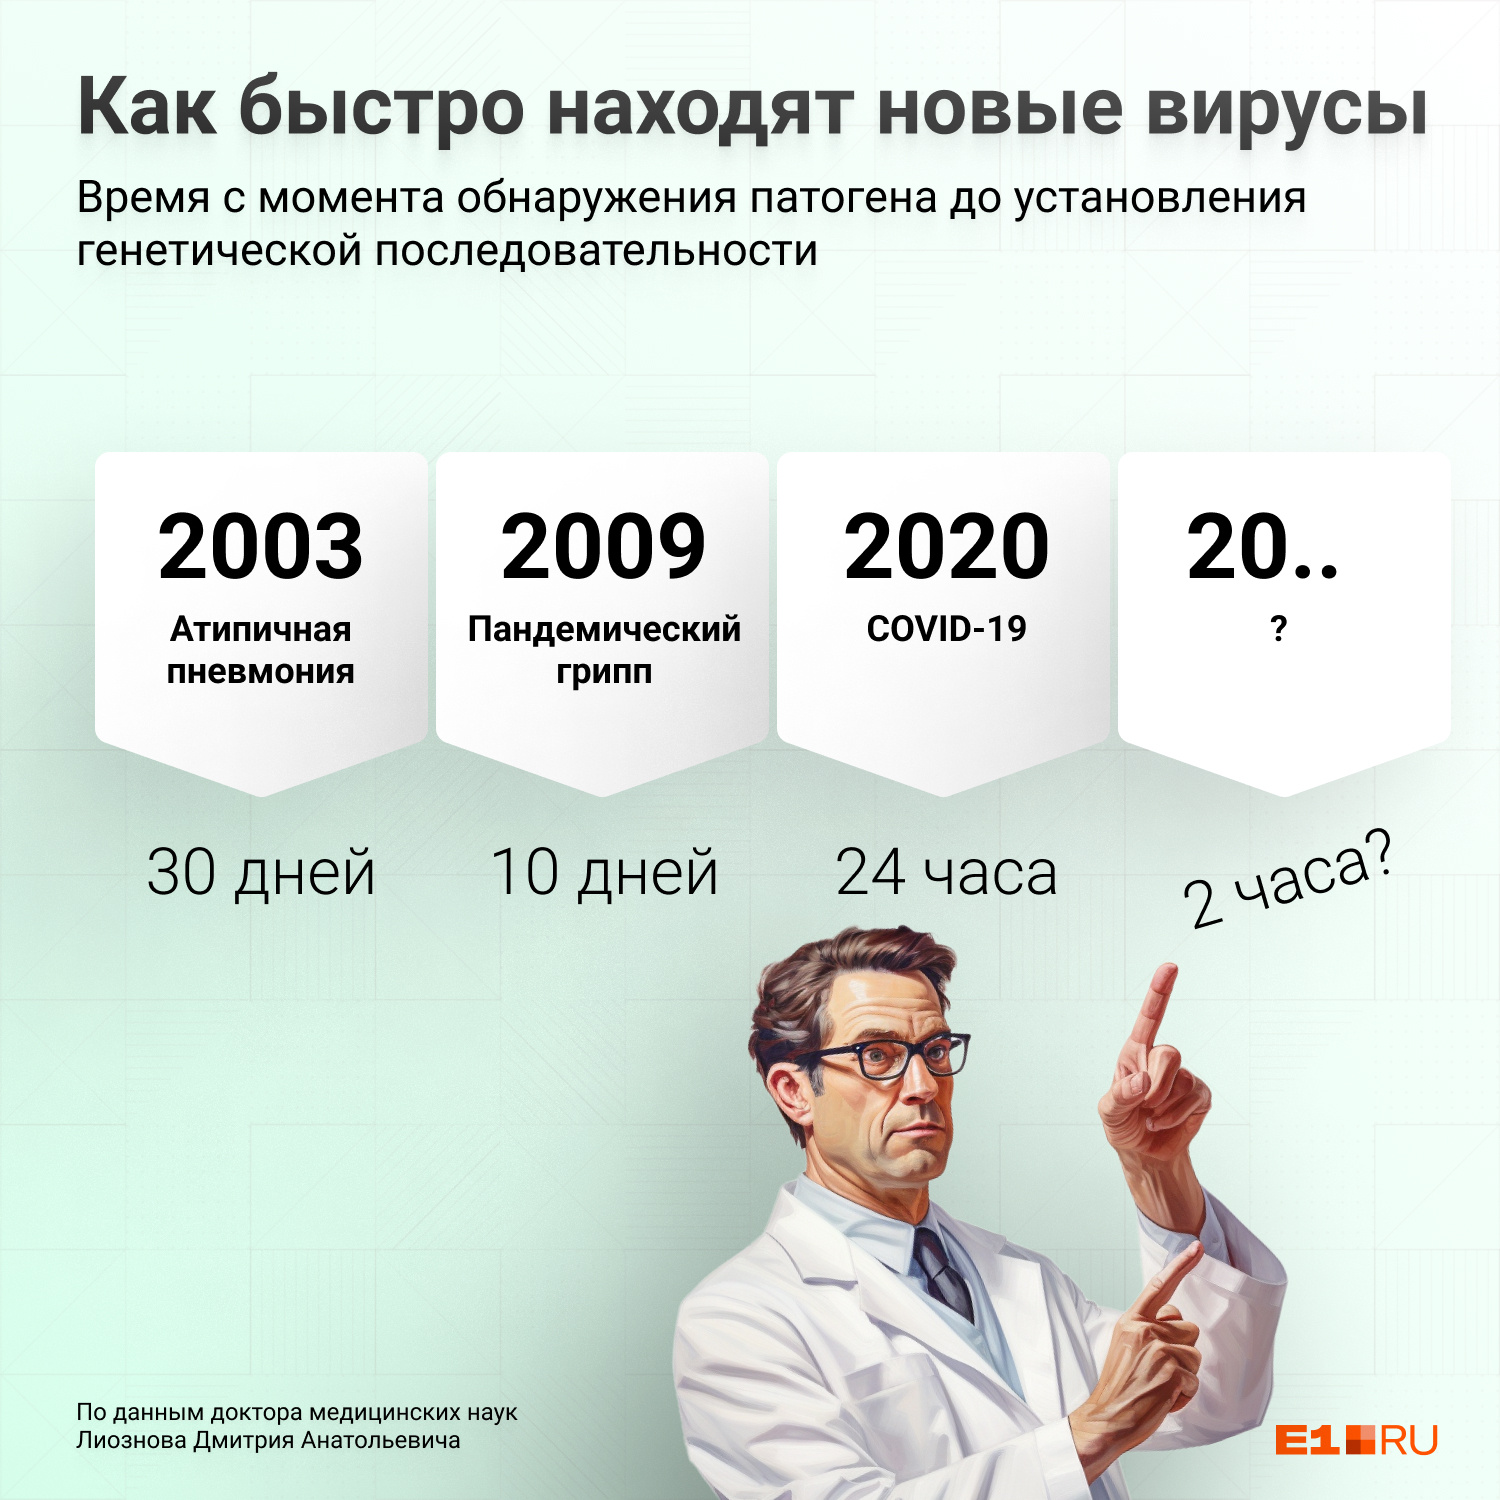 Наука в России развивается, в 2003 году на определение нового возбудителя ушло 30 дней, в 2020 году неизвестный ранее COVID-19 определили за сутки